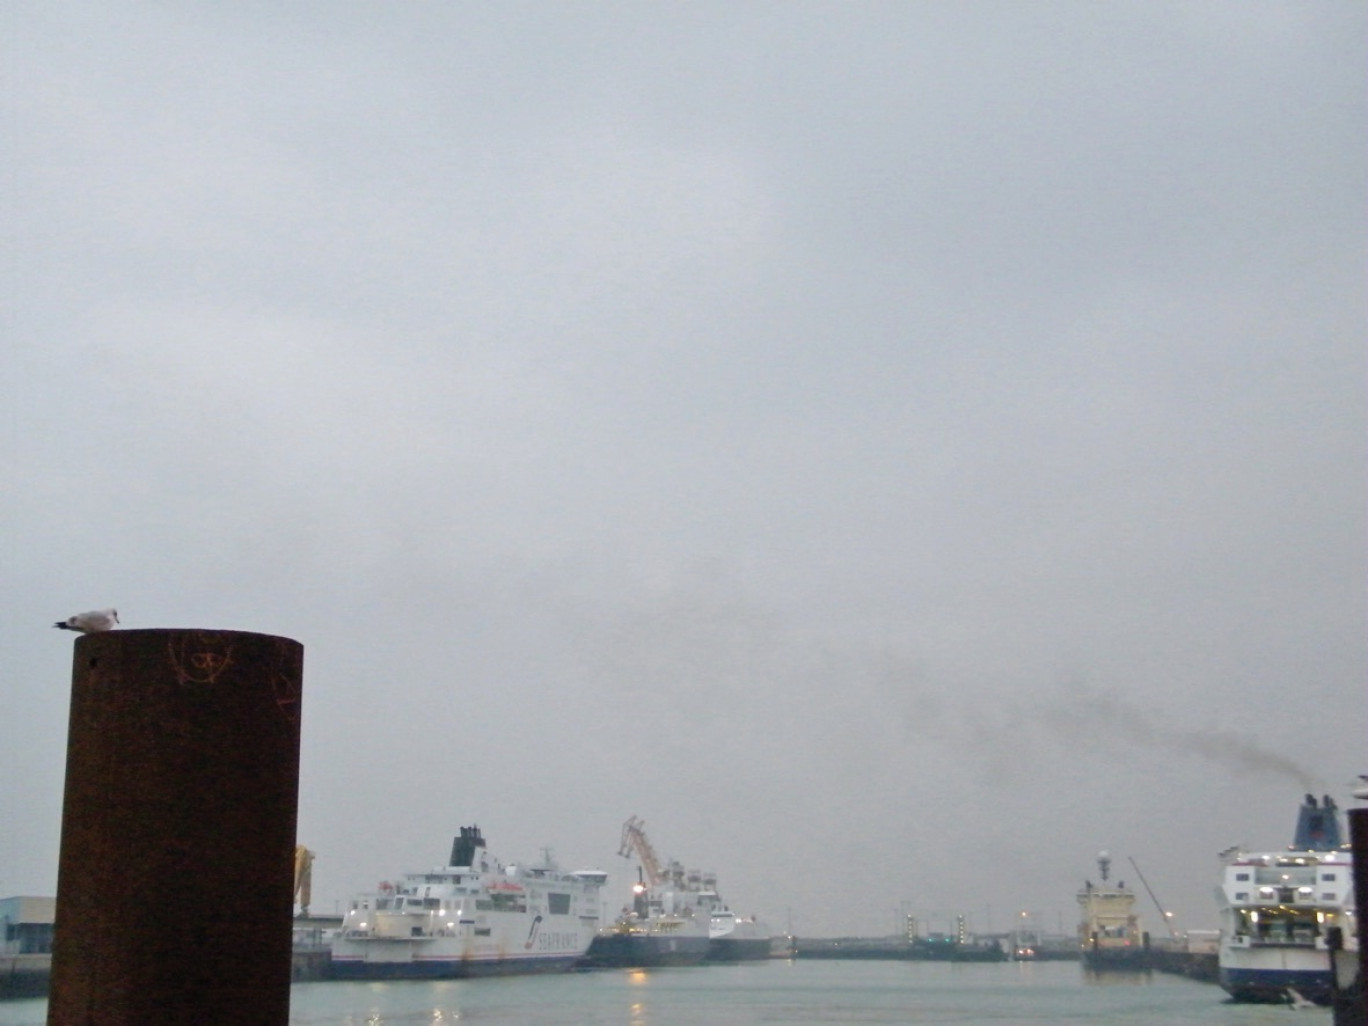 Dans le port de Calais, SeaFrance est toujours à quai.